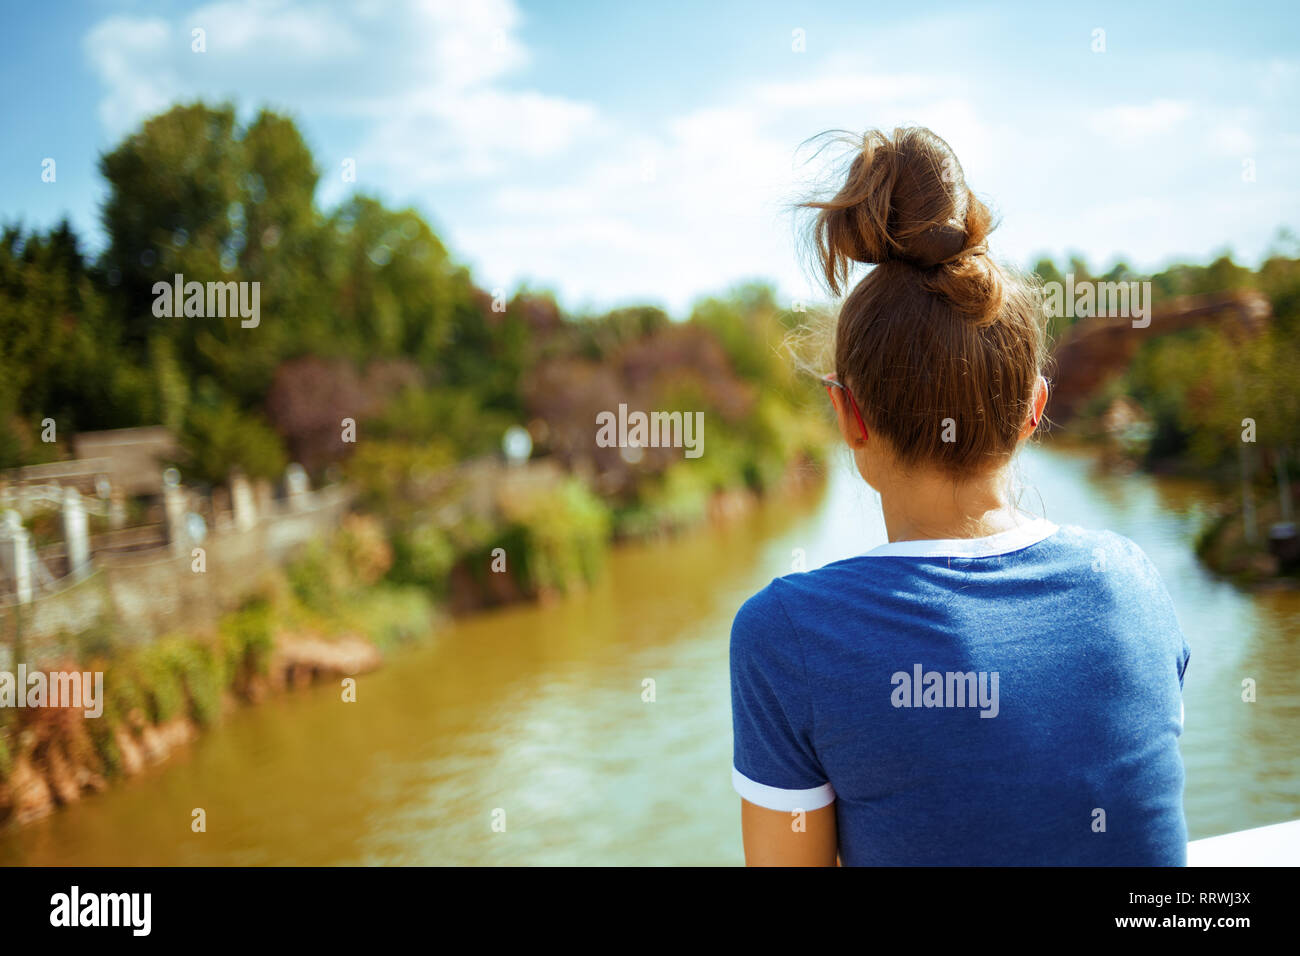 Von hinten gesunde Solo touristische Frau in Blau t-shirt auf dem Fluss Boot erkunden Sie die Landschaft mit Fluss Kreuzfahrt. Stockfoto